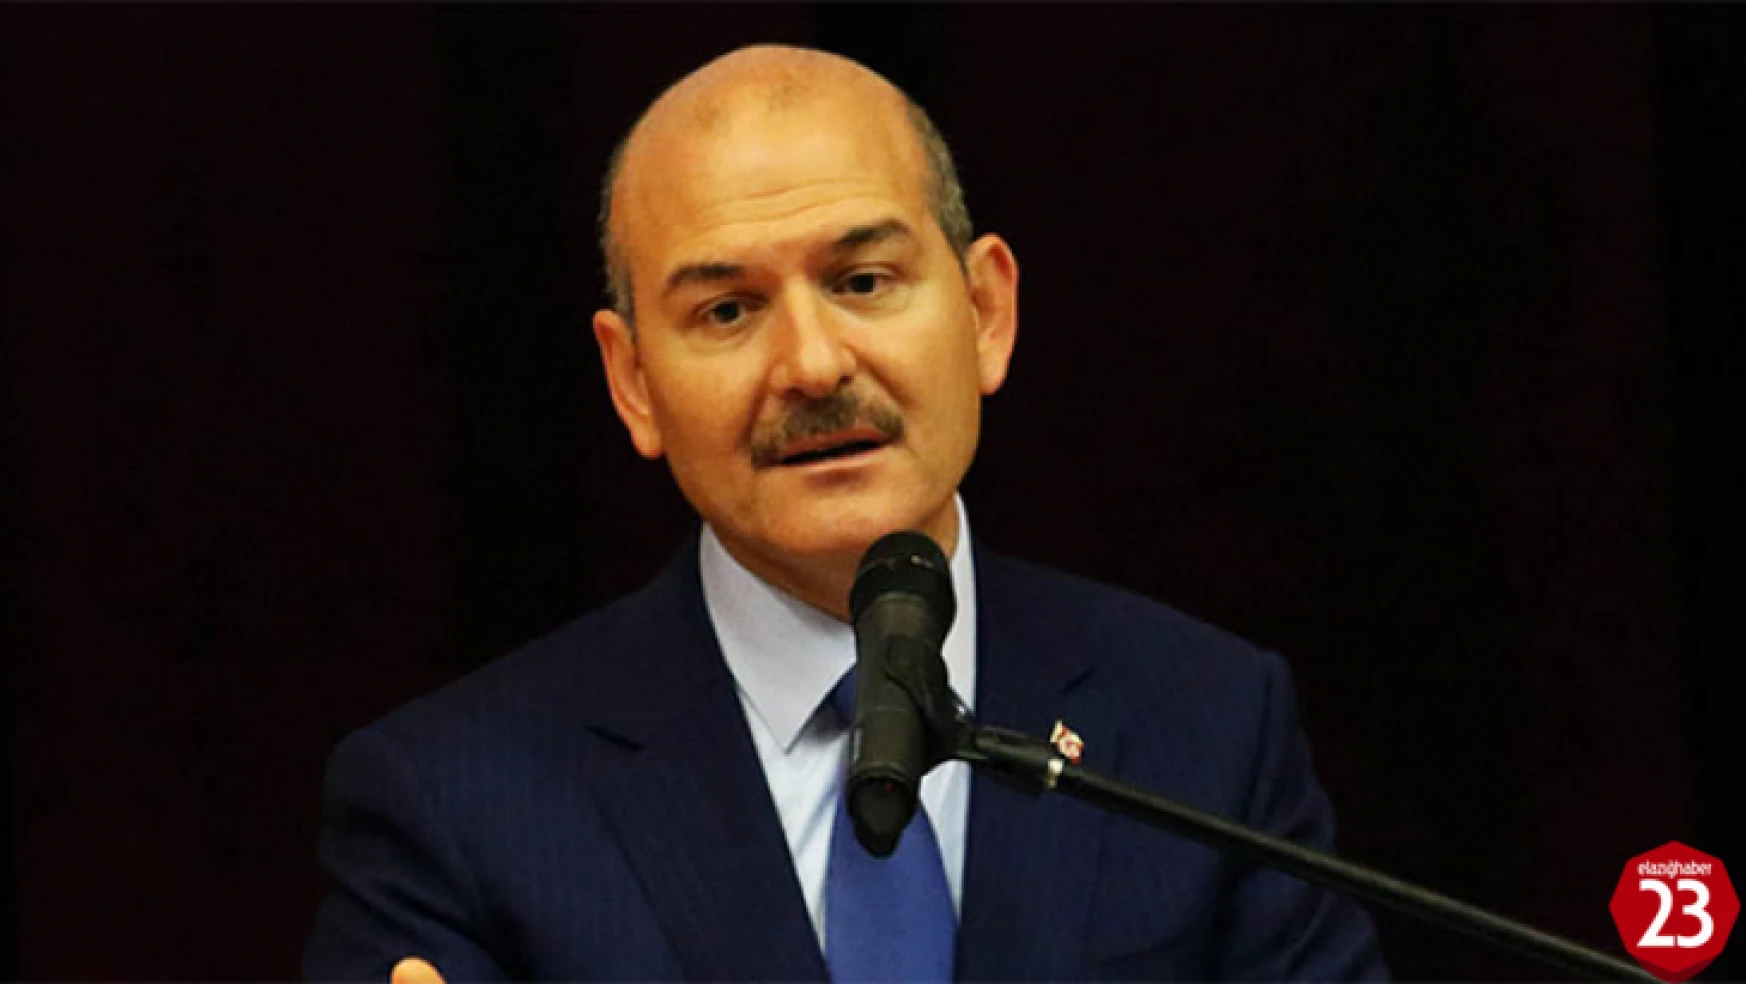 İçişleri Bakanı Süleyman Soylu, Zeki Sekin'nin Cenaze Namazı İçin Elazığ'a Gelecek